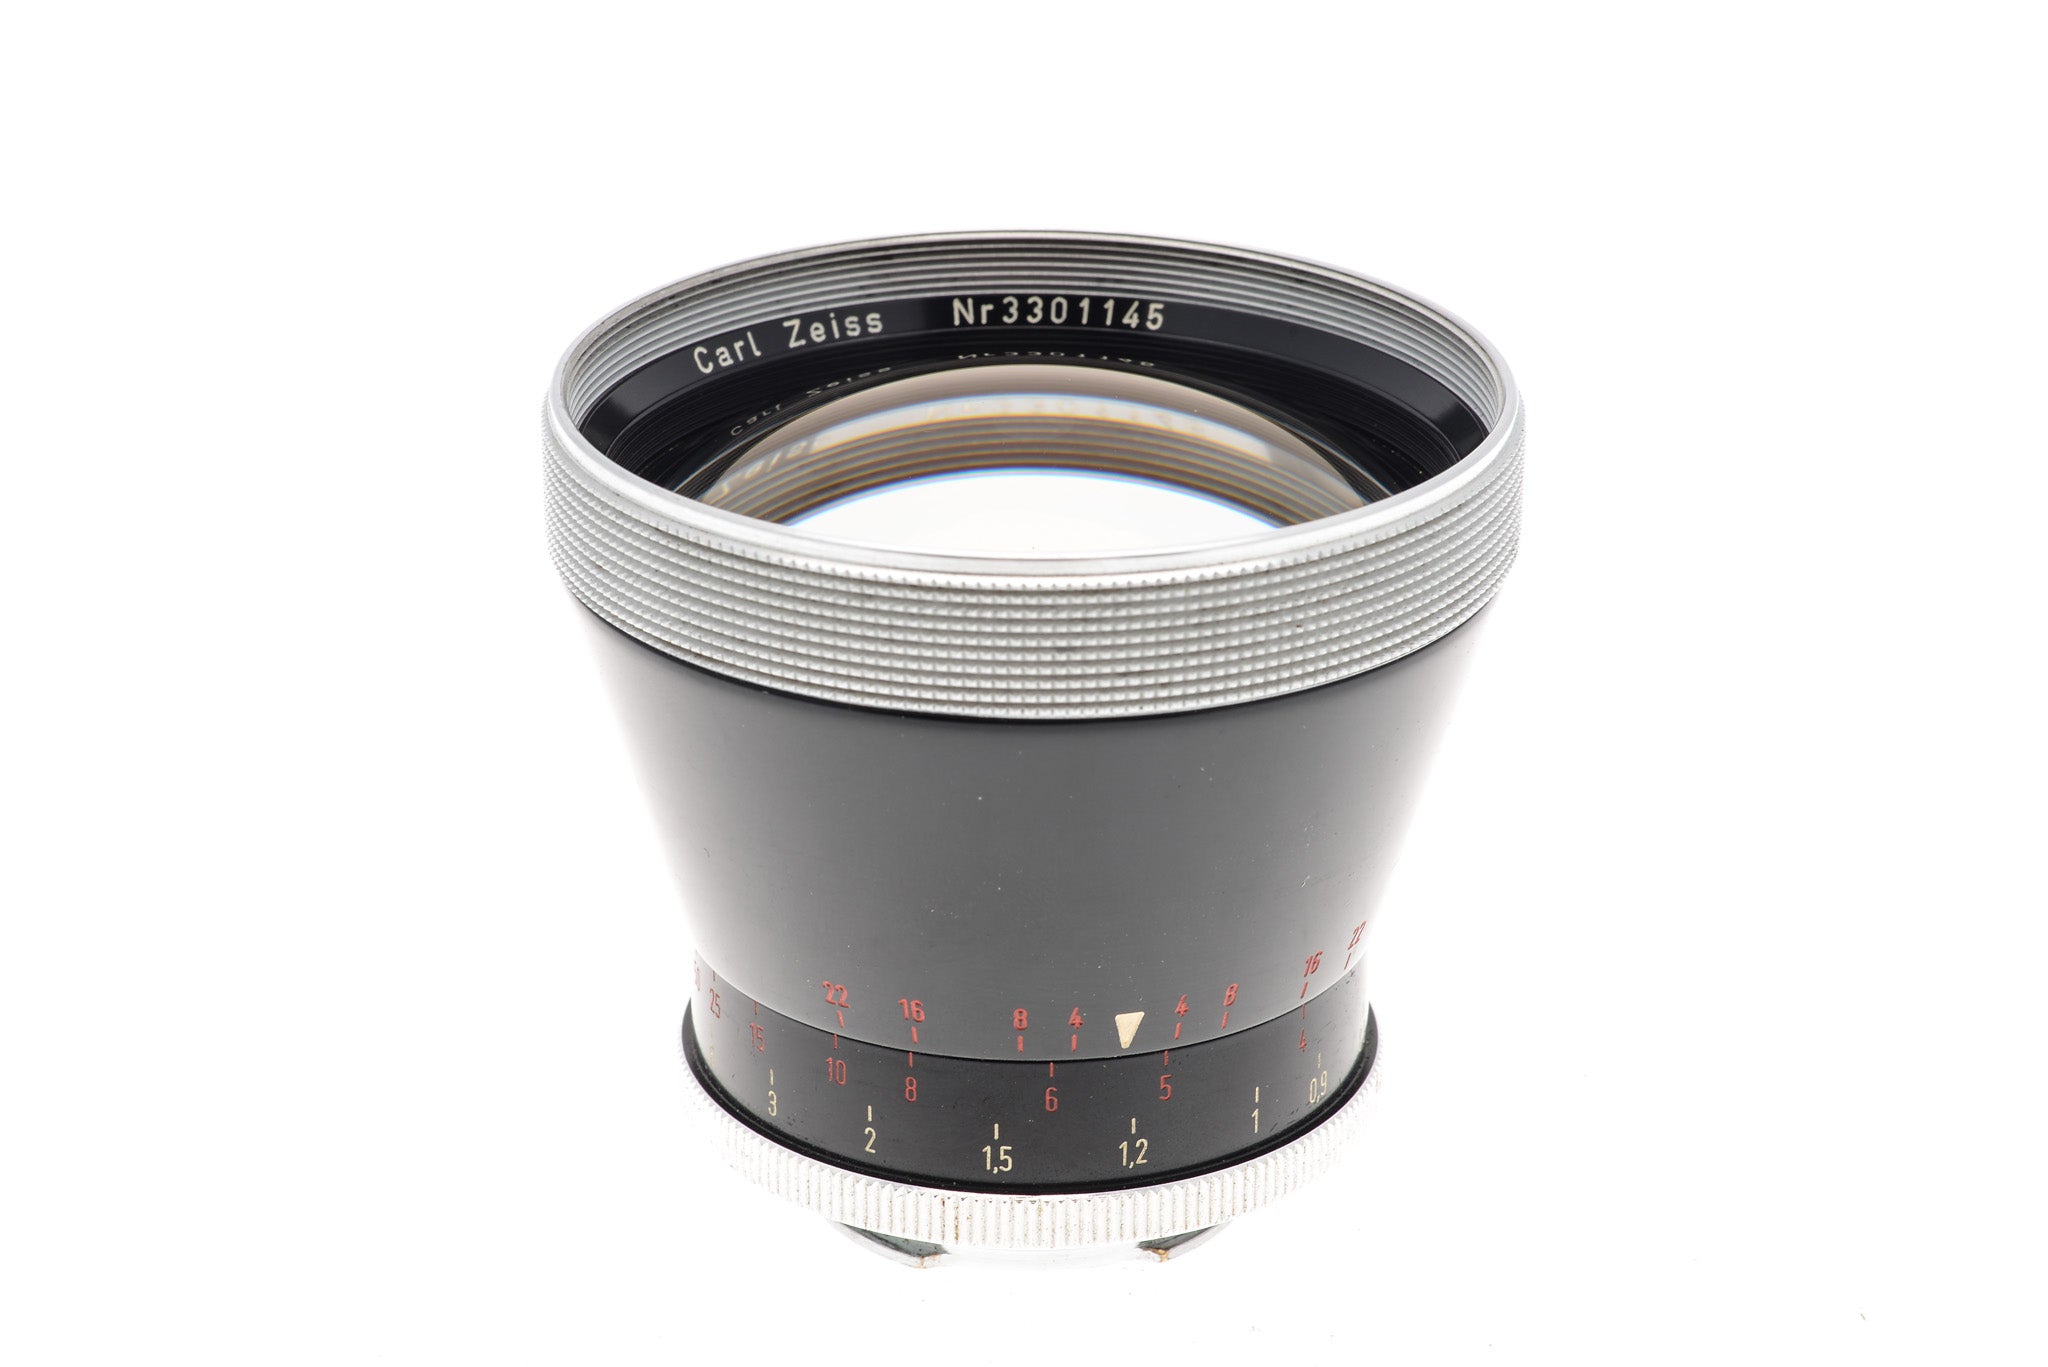 Carl Zeiss 115mm f4 Pro-Tessar - Lens